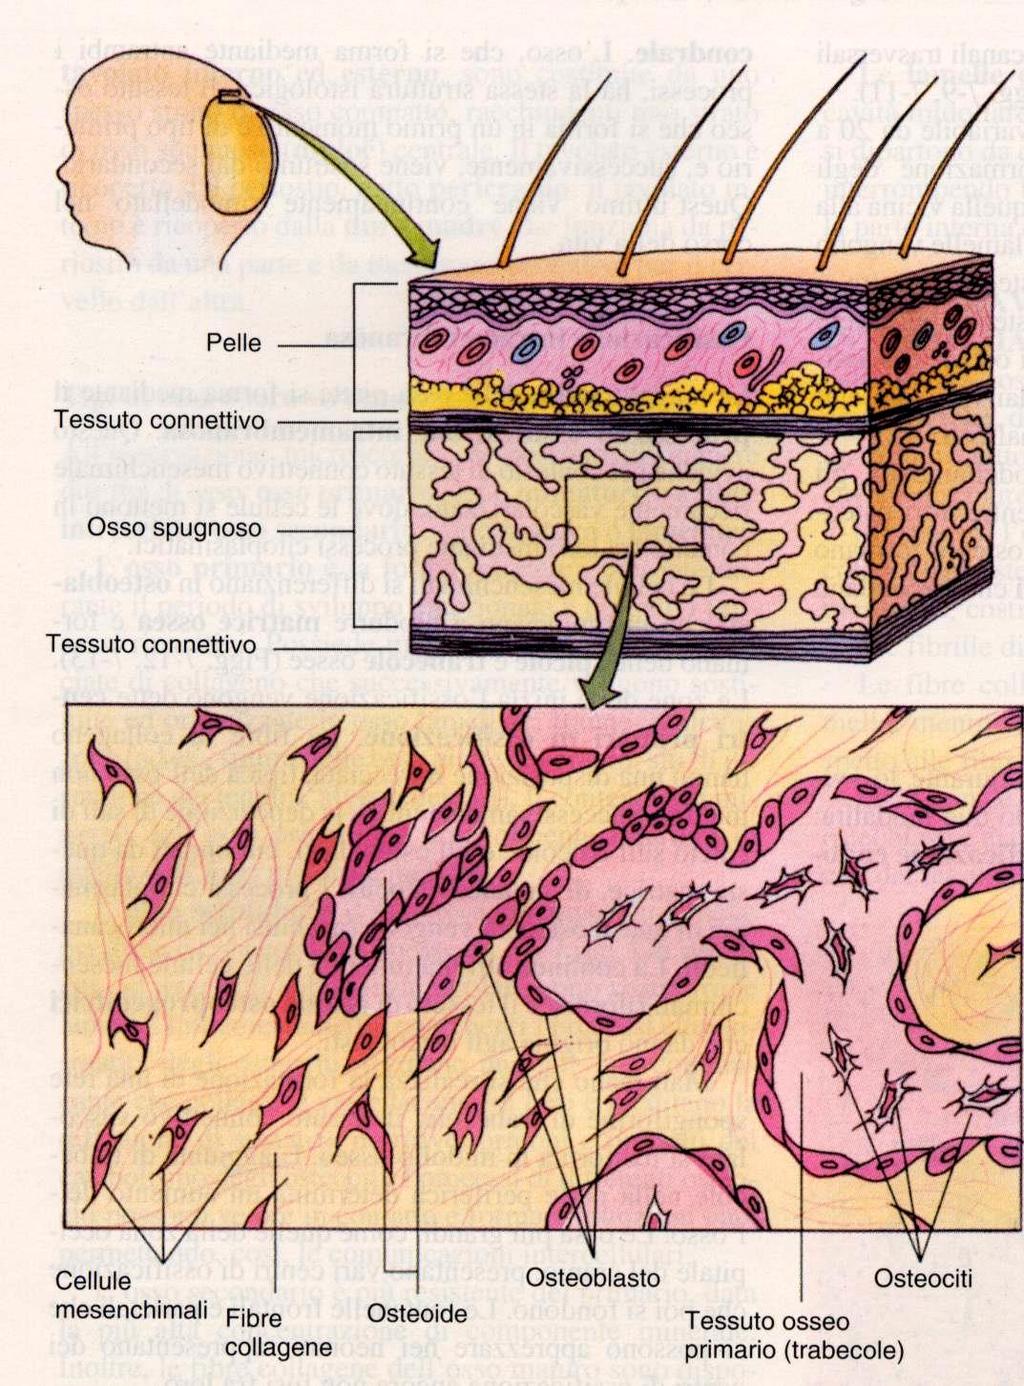 Istogenesi dell osso ossificazione endocondrale (o indiretta in cui l osso è preceduto da un modello cartilagineo) ossificazione intramembranosa ( o diretta, l osso si forma direttamente nel